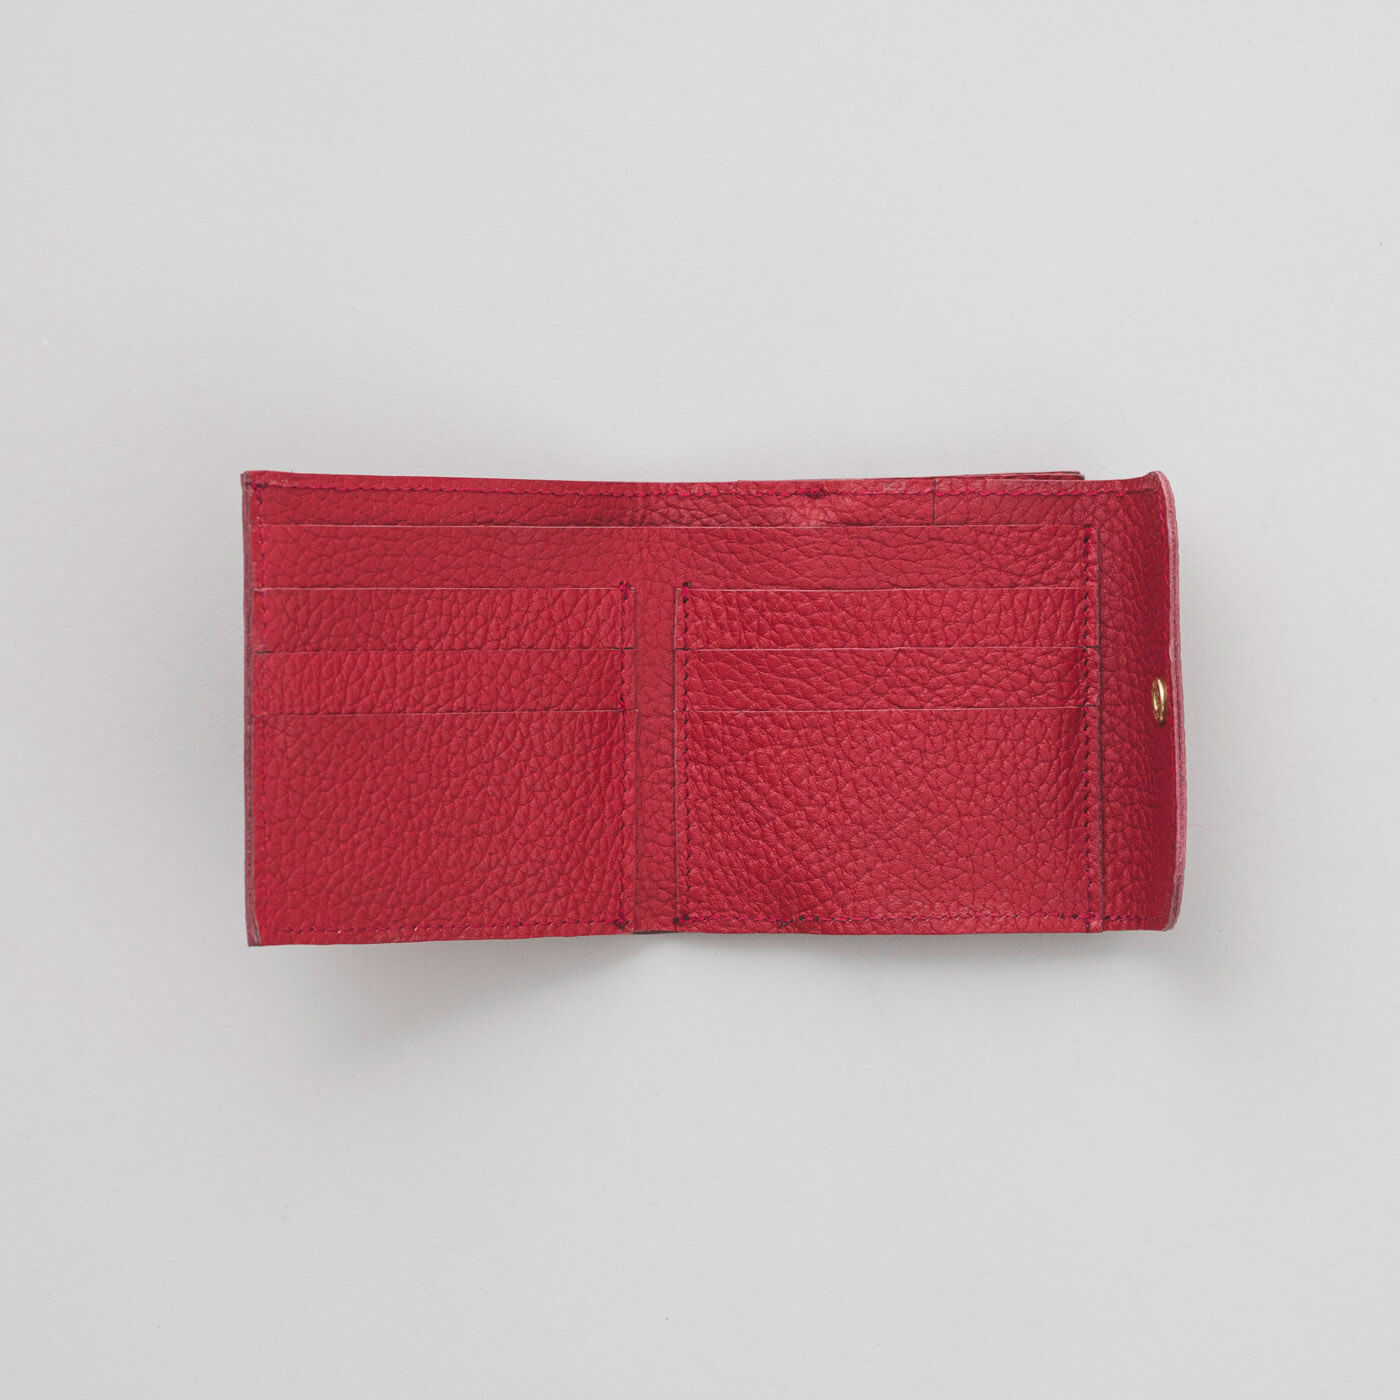 ＆Stories|福岡の鞄作家が作った 職人本革のエンベロープウォレット〈ストロベリー色〉|カードポケットは6個。